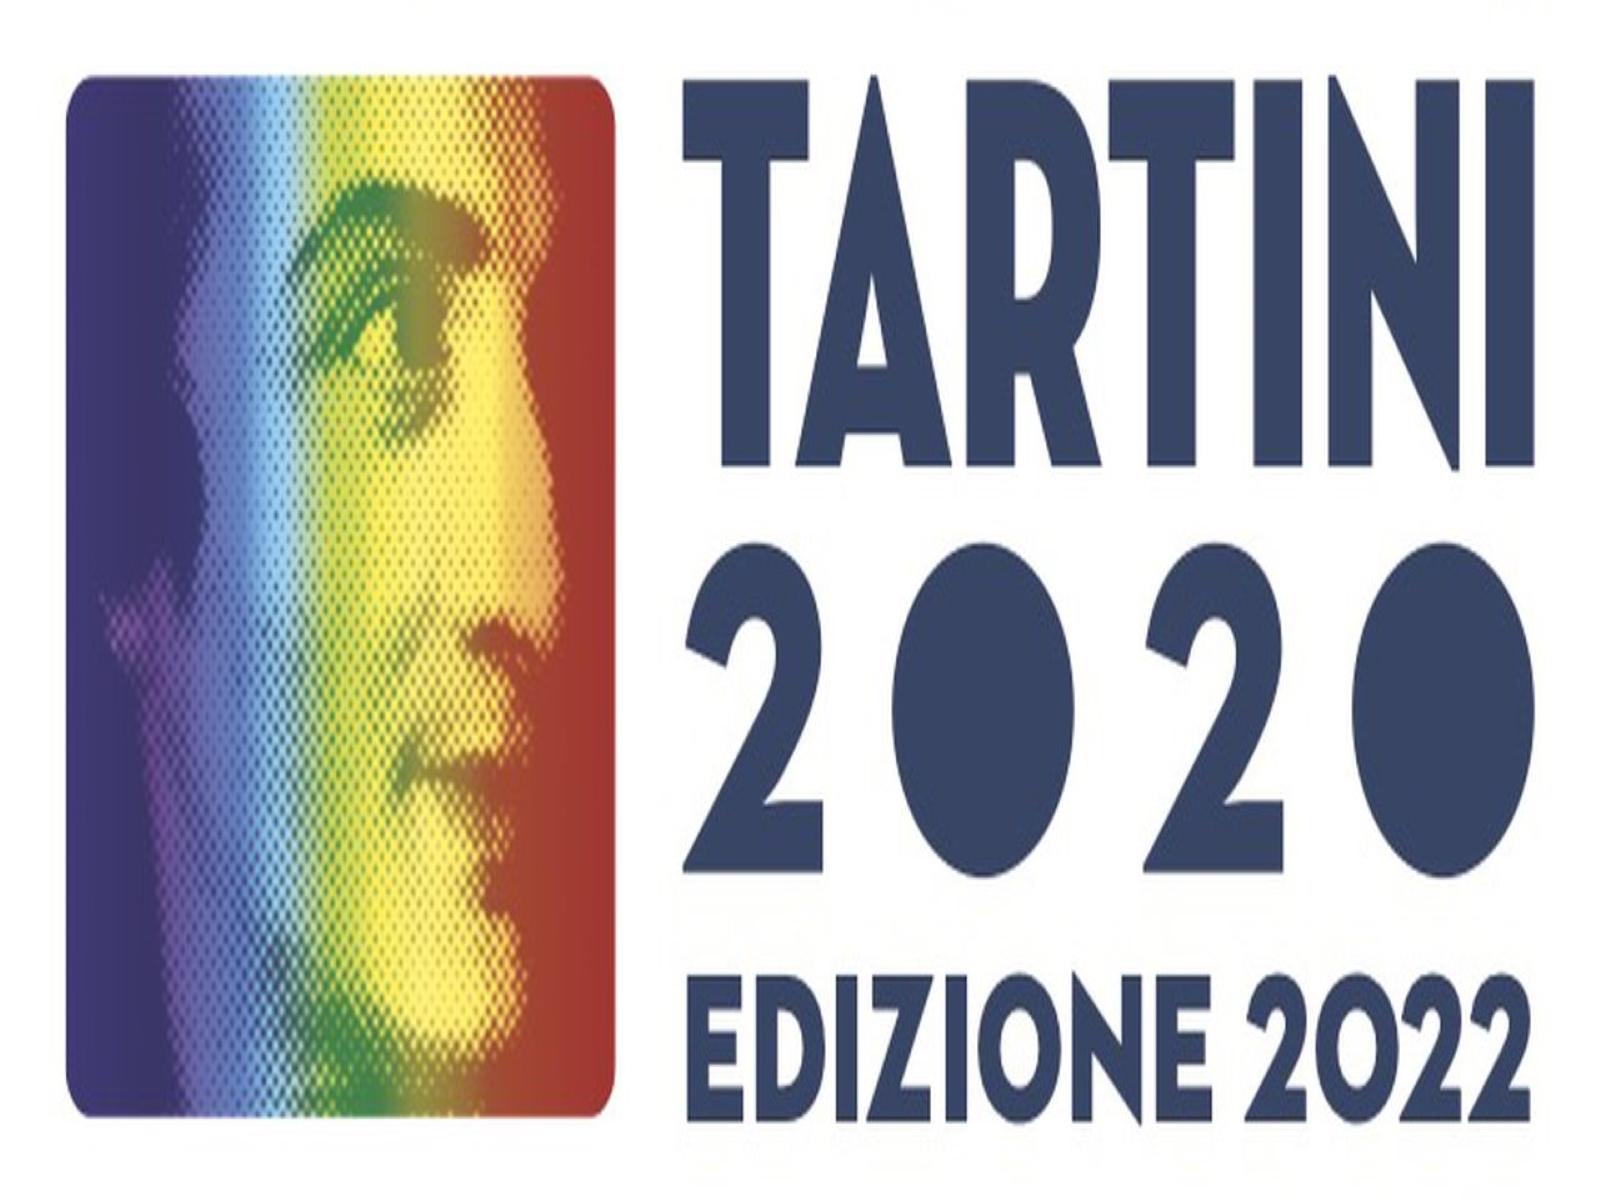 Tartini 2020 | Edizione 2022 